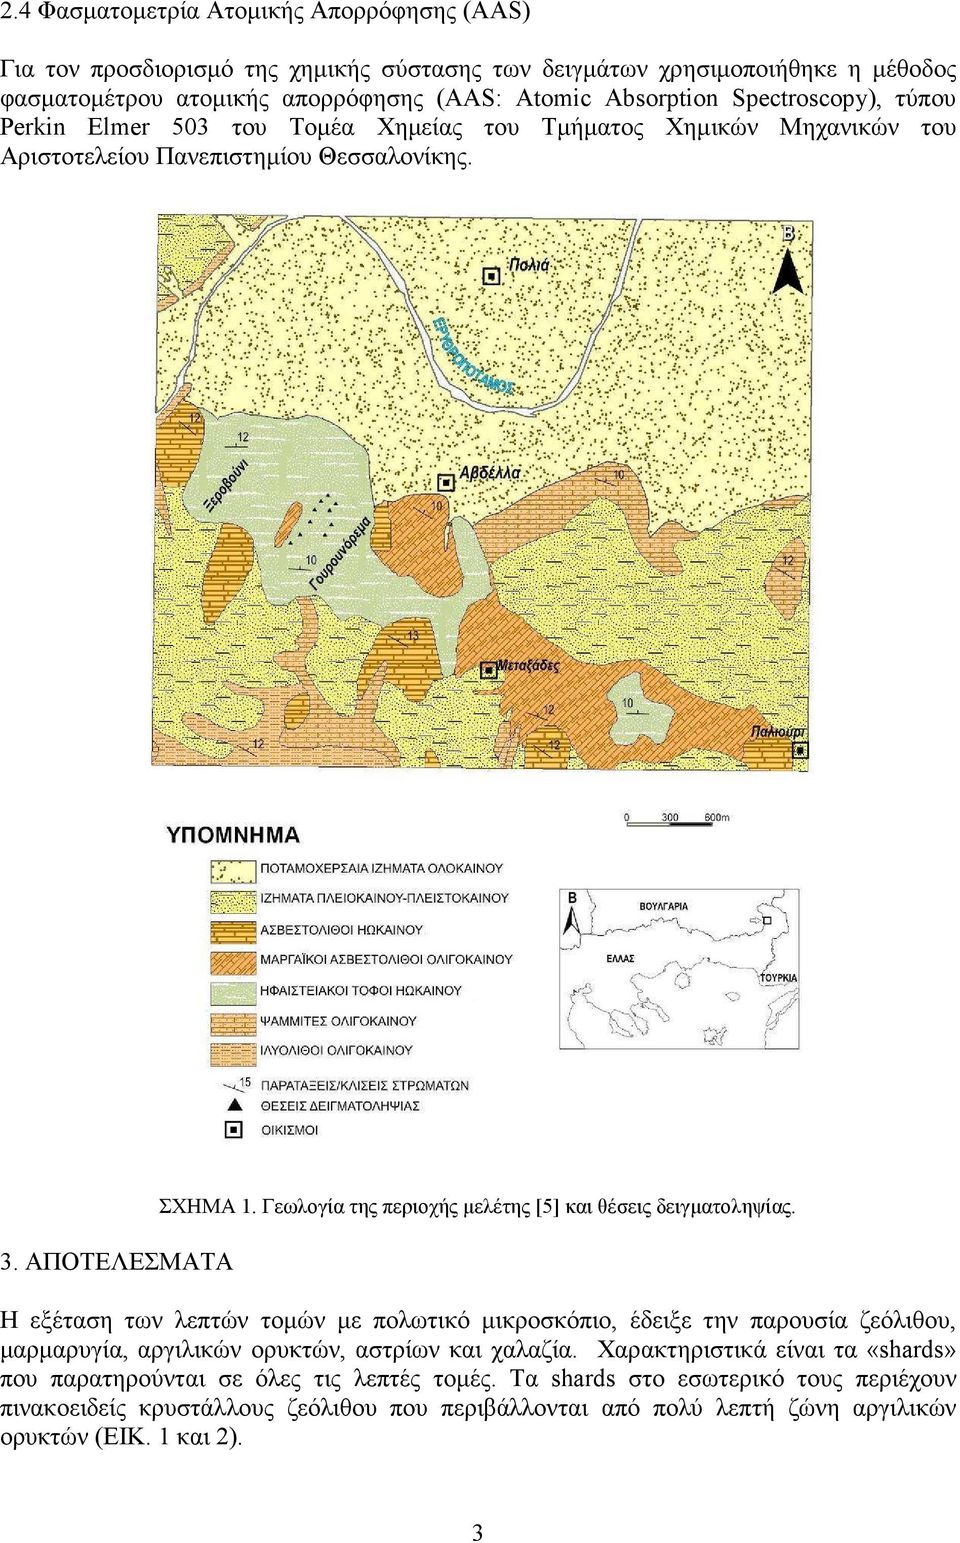 Γεωλογία της περιοχής µελέτης [5] και θέσεις δειγµατοληψίας.